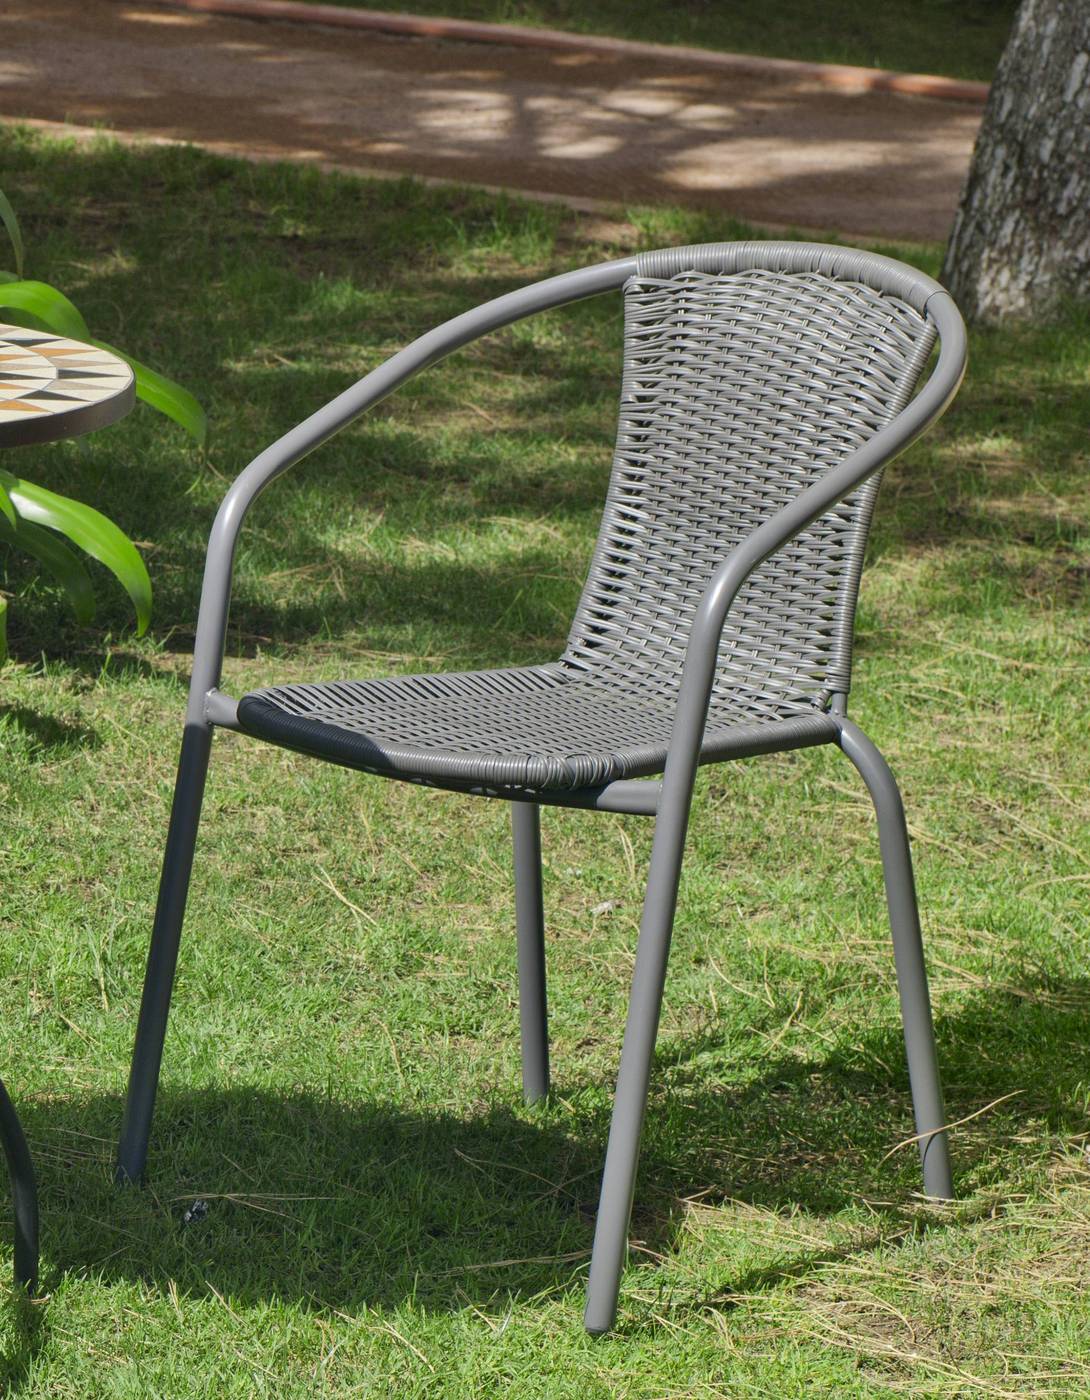 Set Mosaico Estoril-Santana - Conjunto de terraza y jardín color gris: mesa redonda de acero forjado, con tablero mosaico de 60 cm. + 2 sillones apilables de wicker